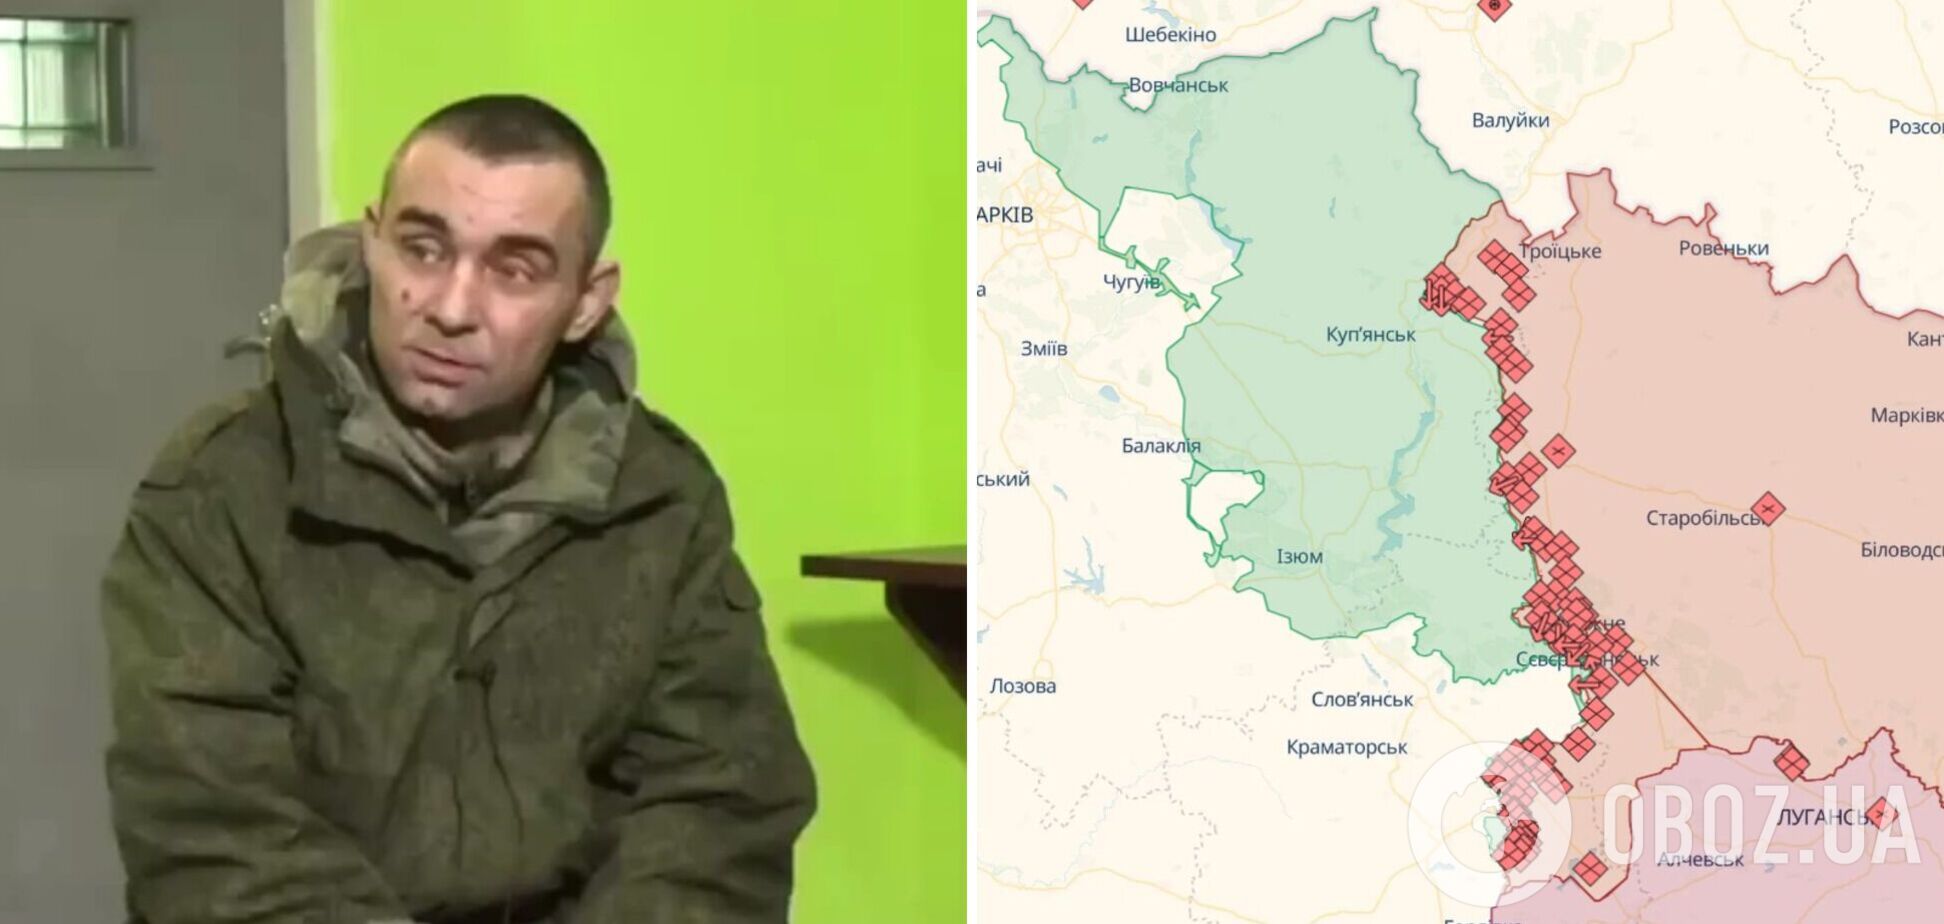 'У меня просто по географии два было': пленный оккупант 'оригинально' объяснил, почему оказался на фронте в Харьковской области. Видео